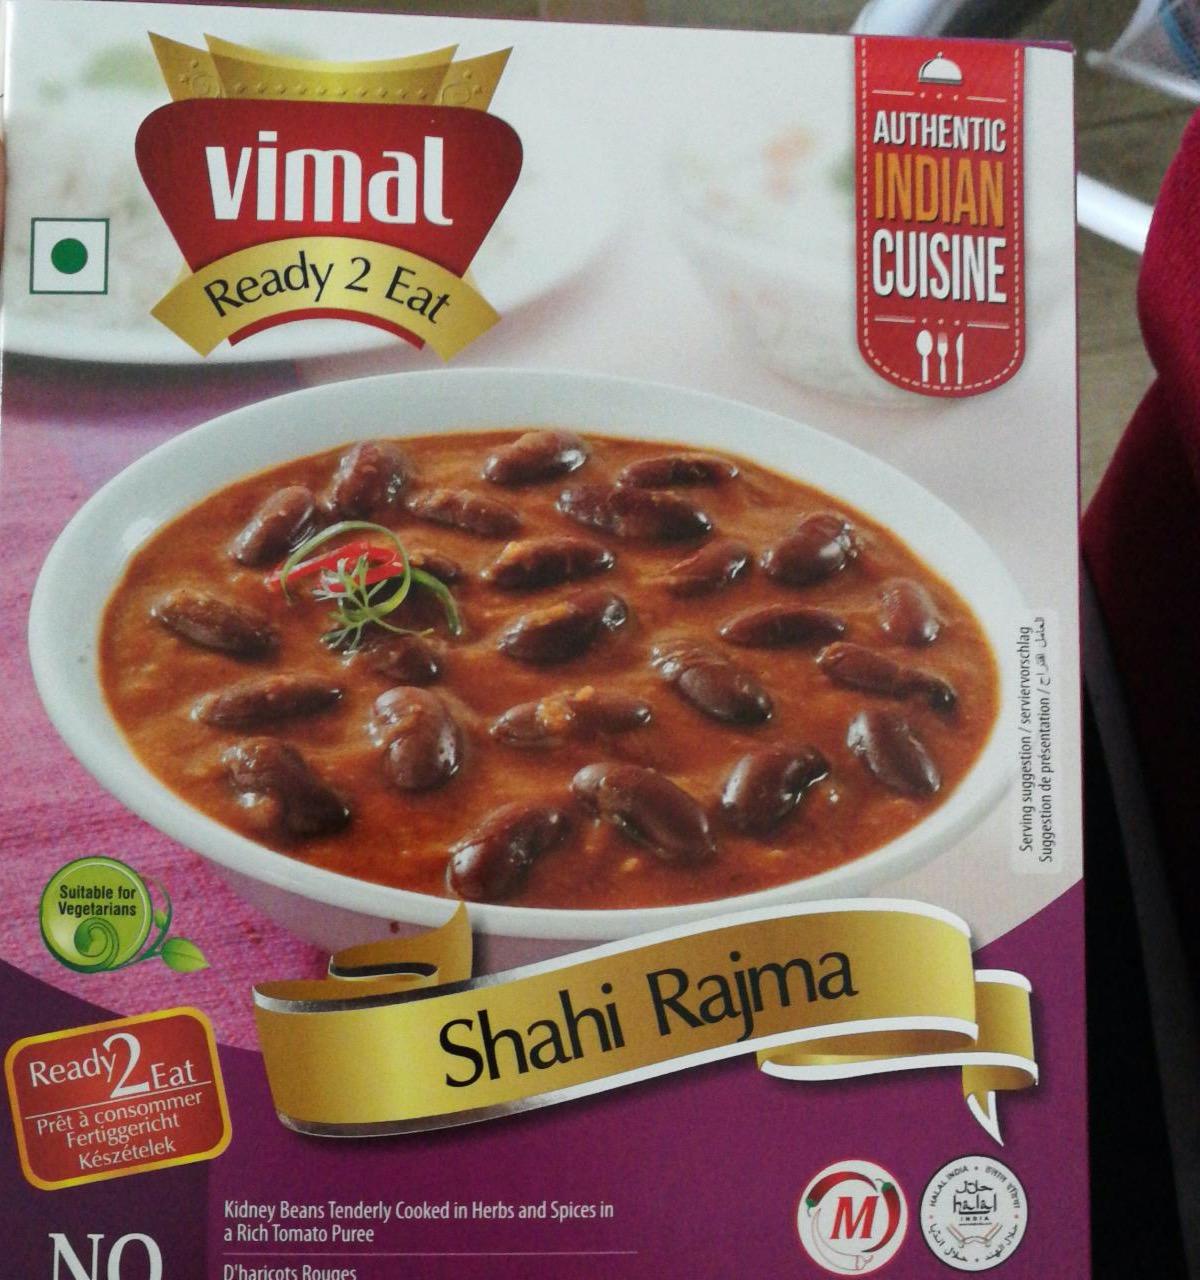 Fotografie - Shahi Rajma ready 2 eat Vimal